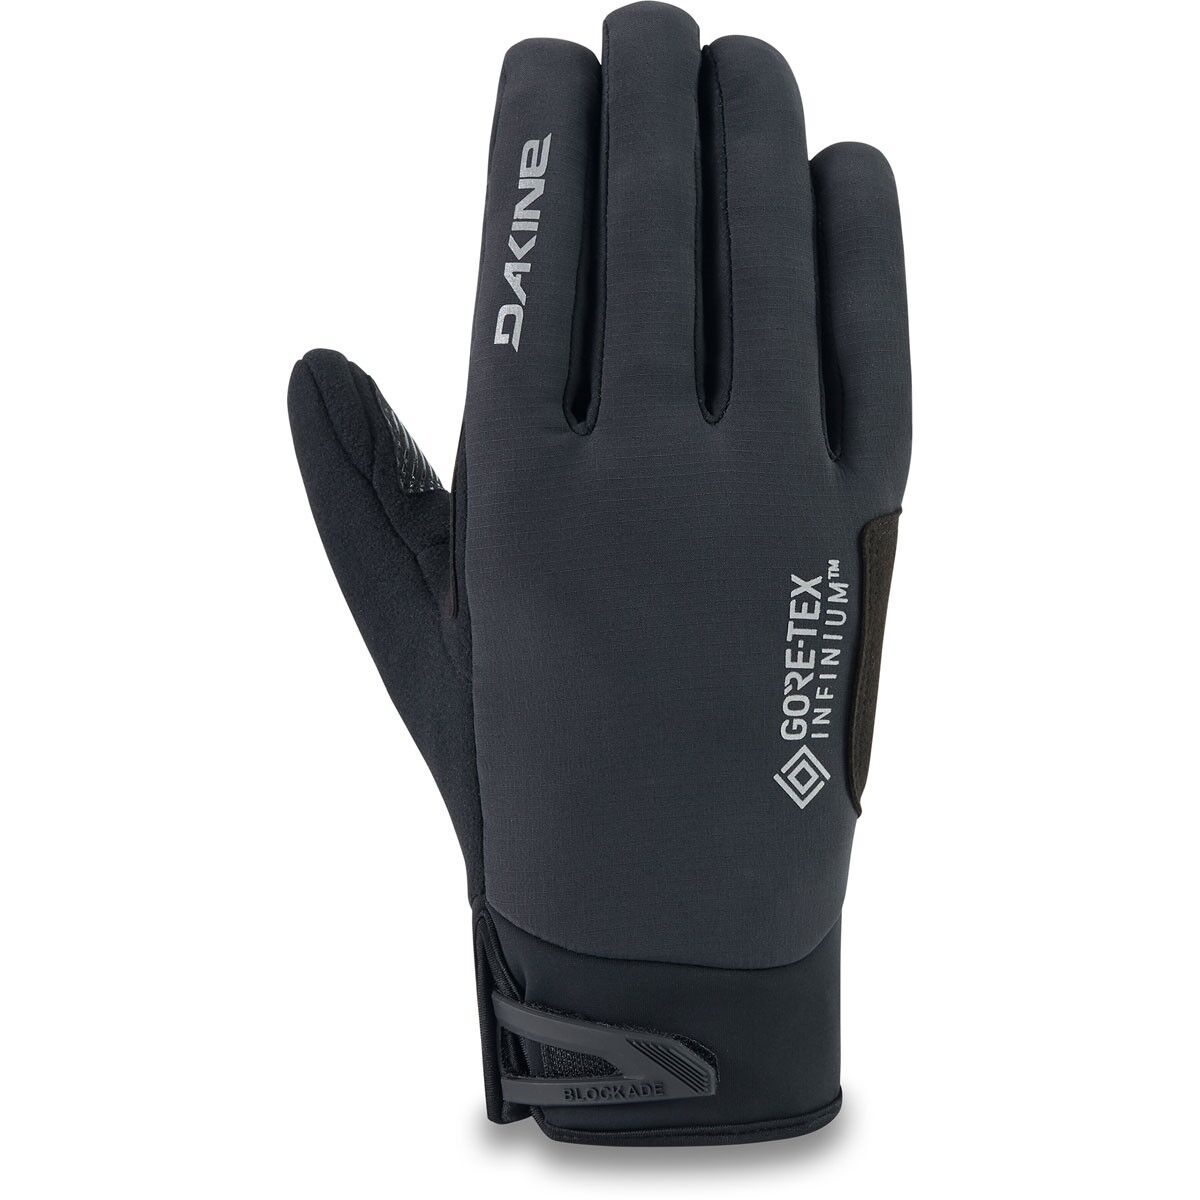 Dakine Blockade Glove - Gloves - Men's